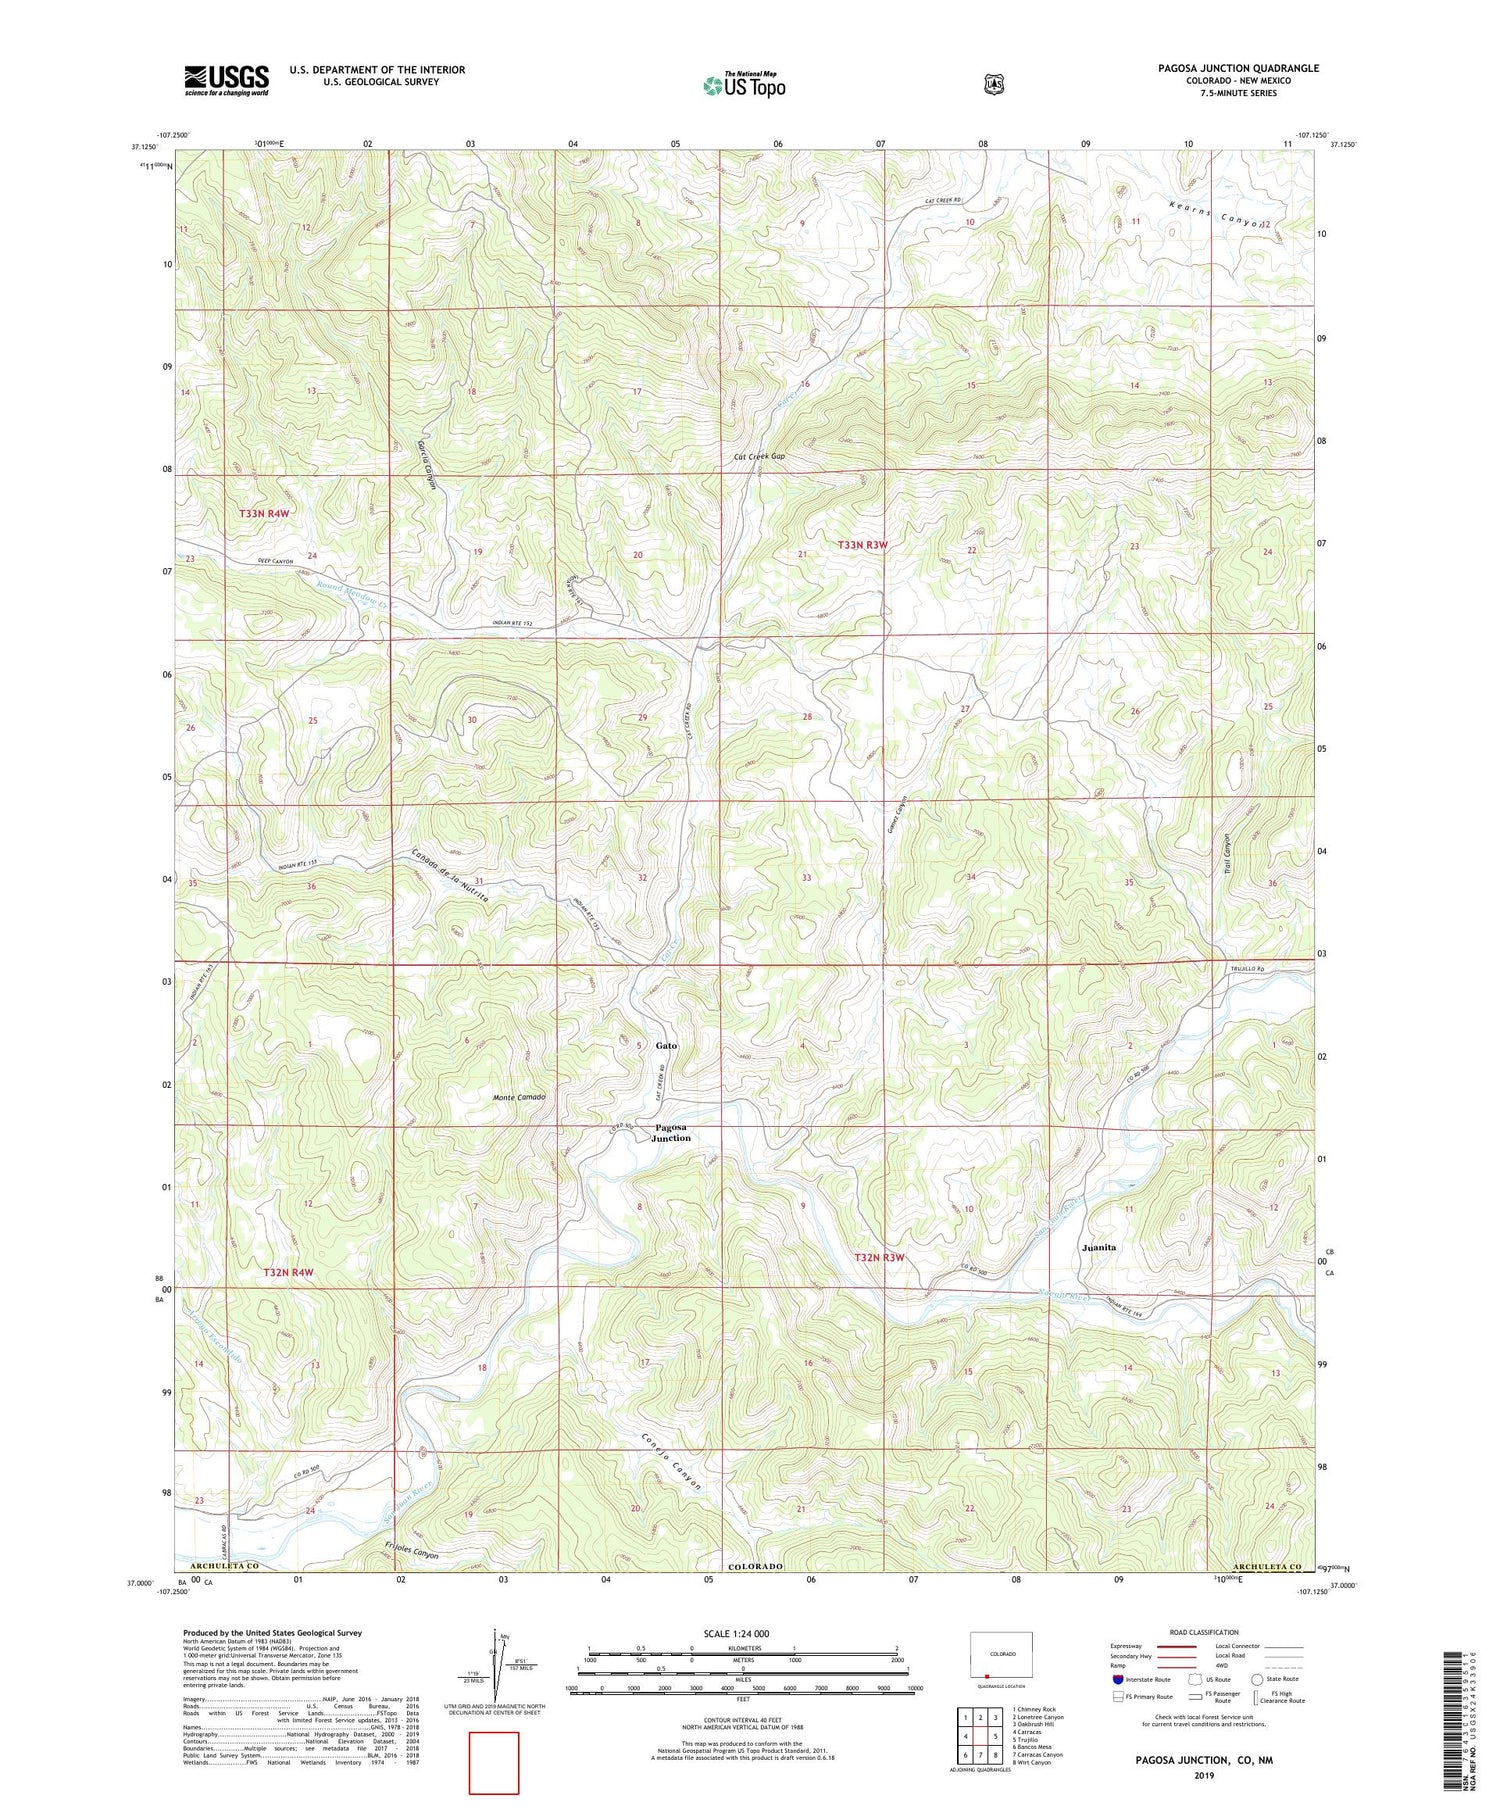 Pagosa Junction Colorado US Topo Map Image